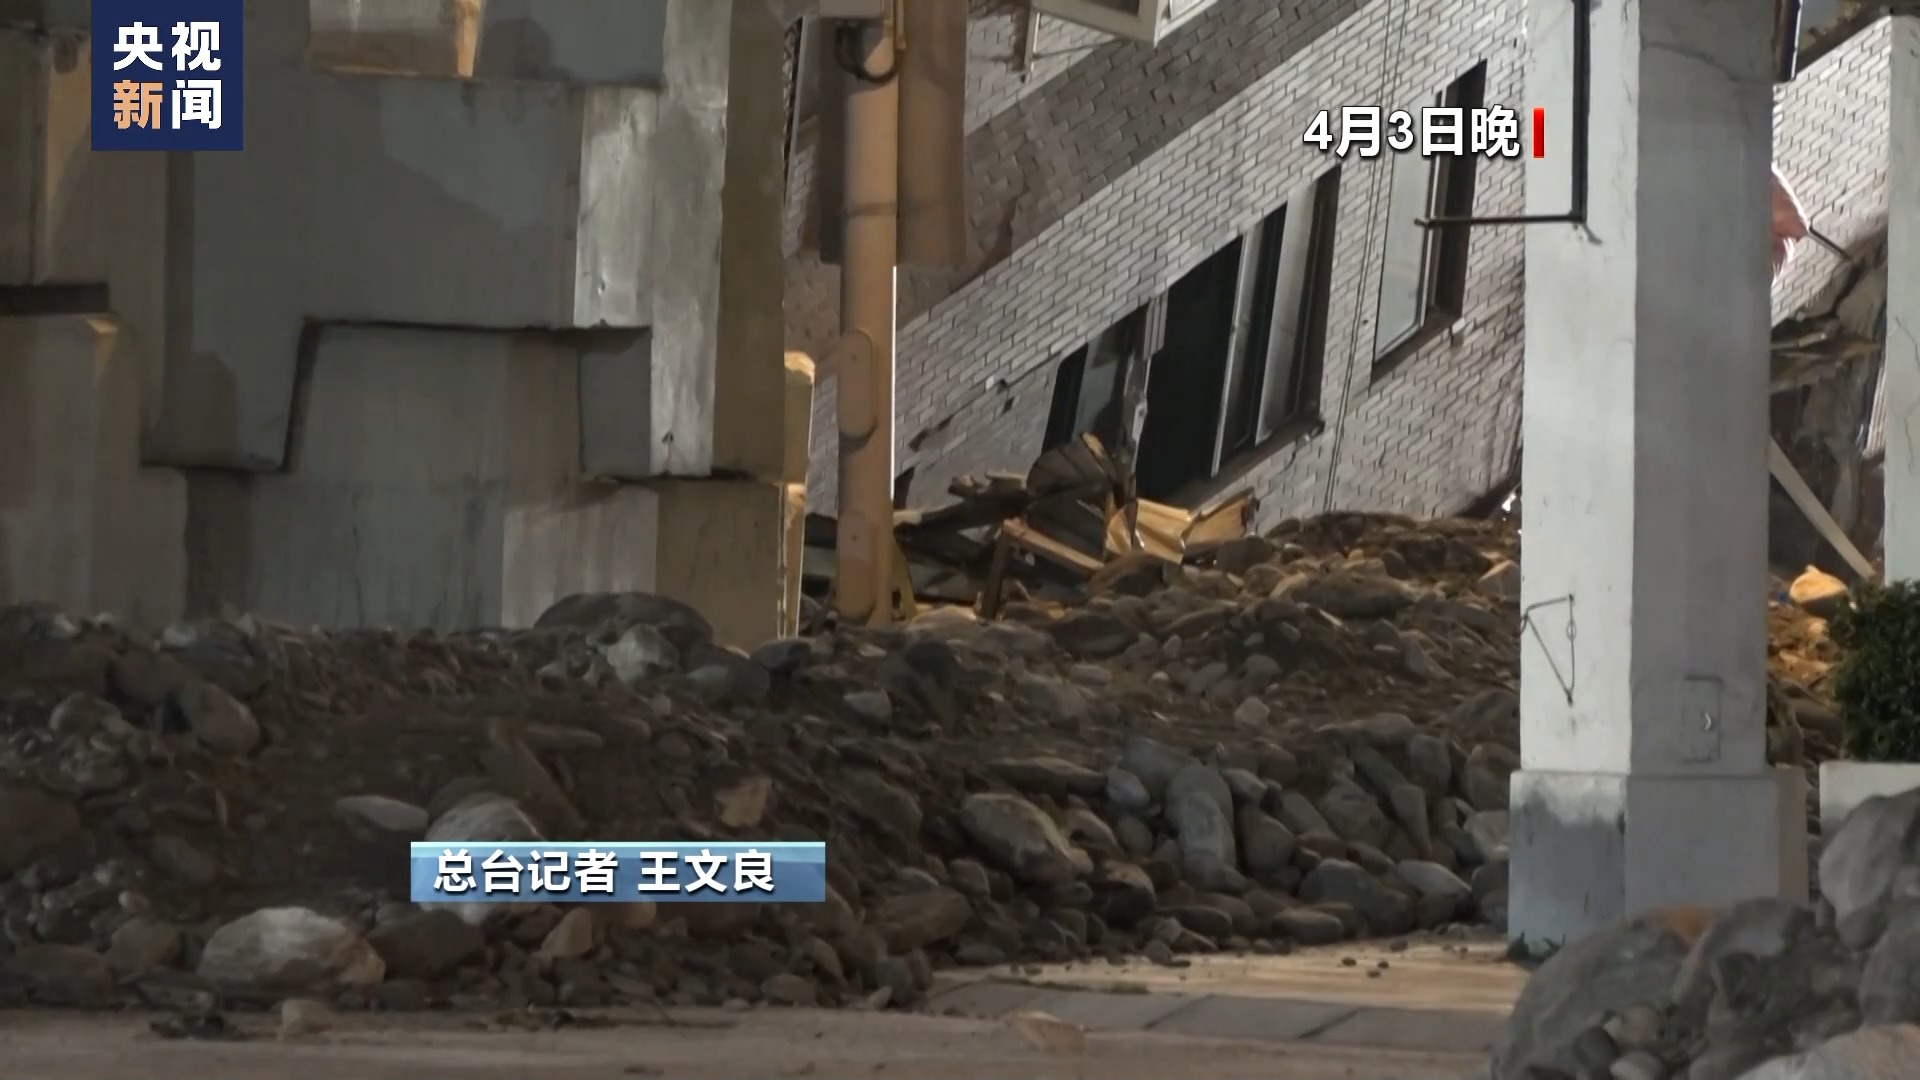 台湾花莲强震中受损告急的天王星大楼搜救举动来源结局